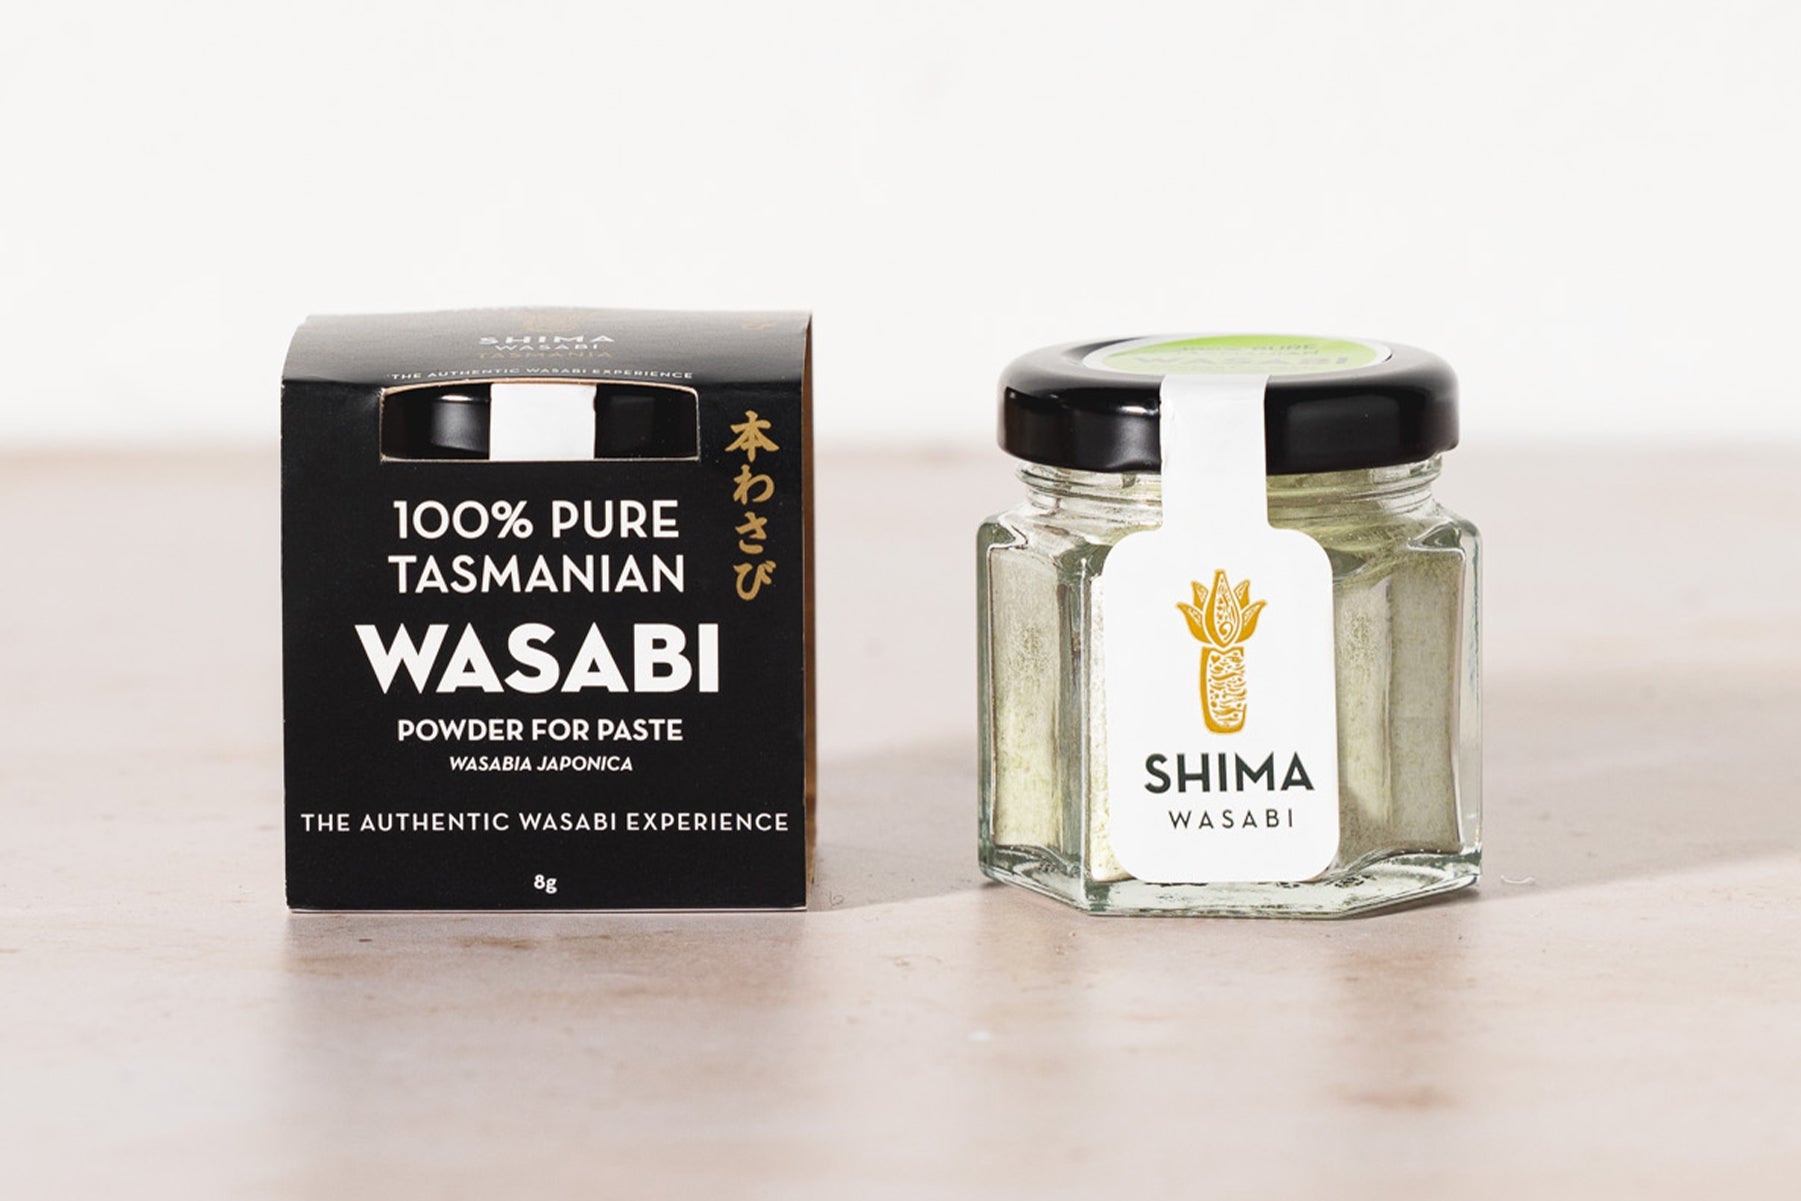 Pure Wasabi Powder